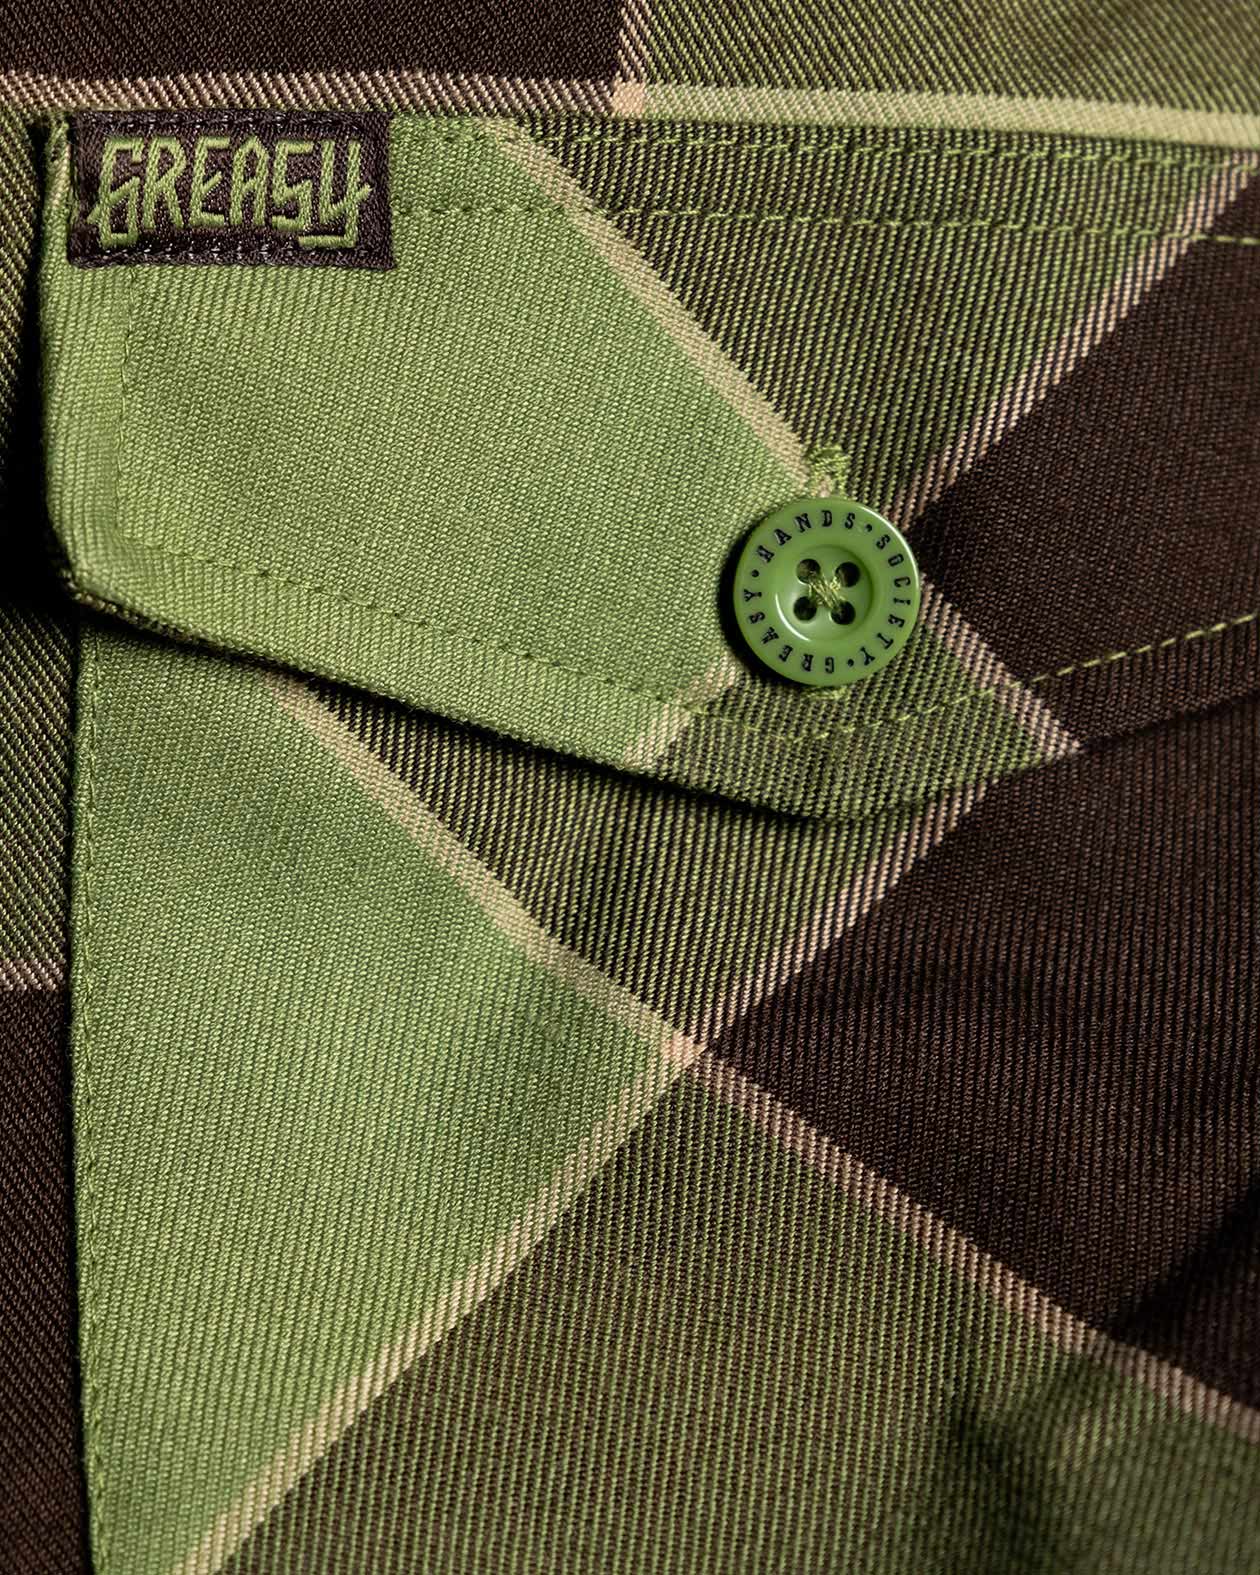 griswold flannel front pocket detail